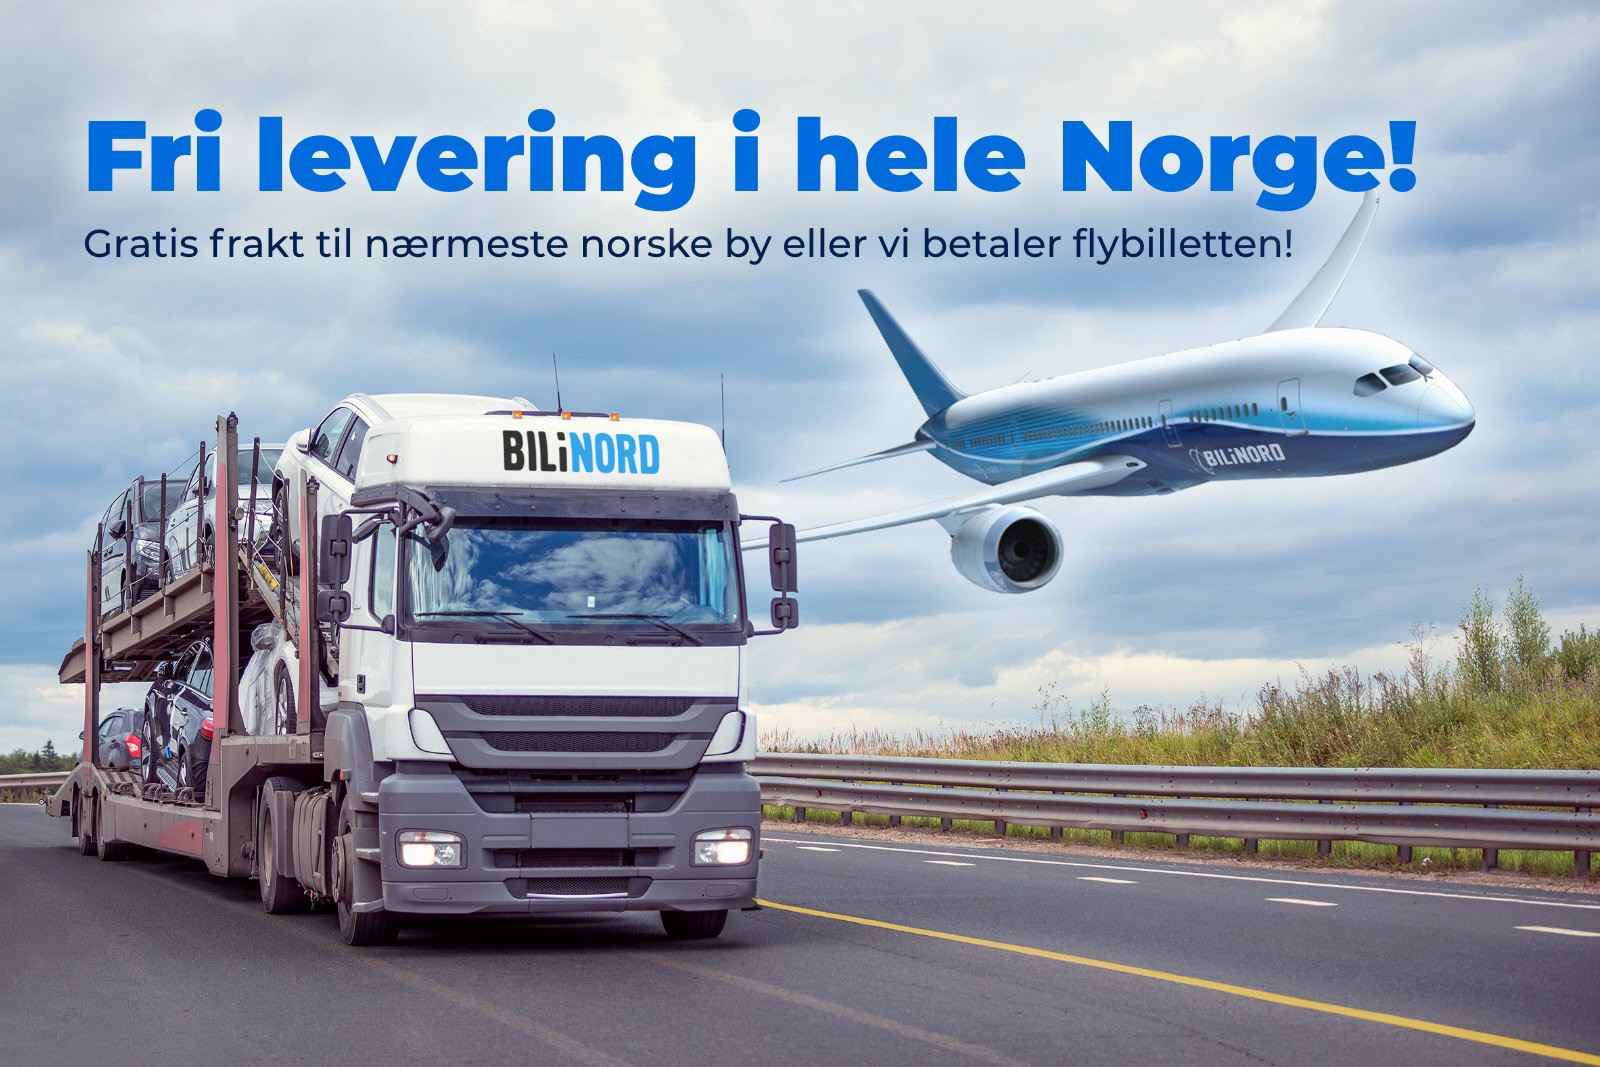 Fri levering i hele Norge!